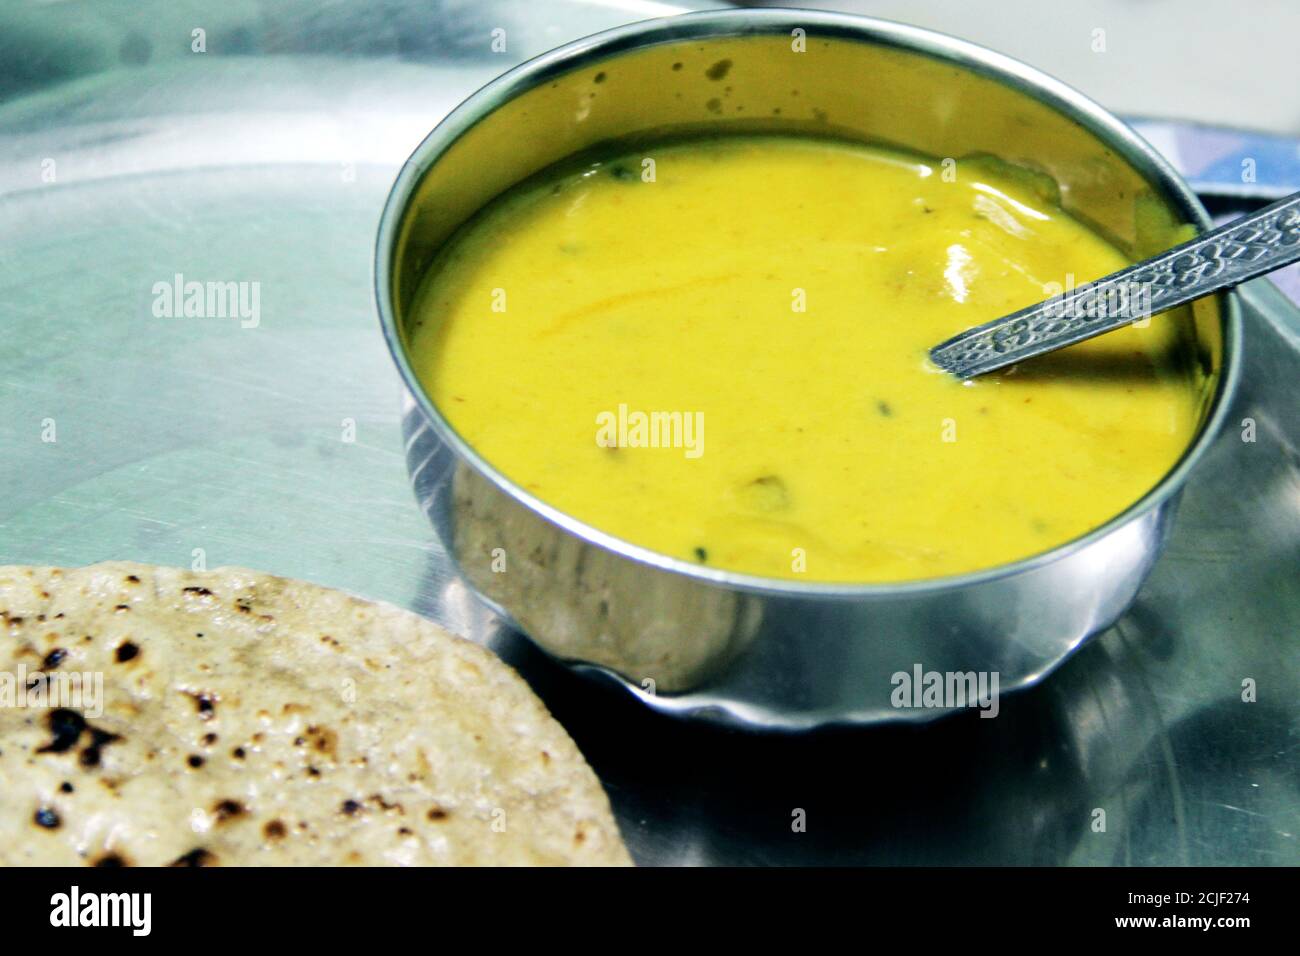 Cuisine indienne Kadhi - Curry végétarien à base de lait de beurre et de farine de poulet. Servi dans un bol Banque D'Images